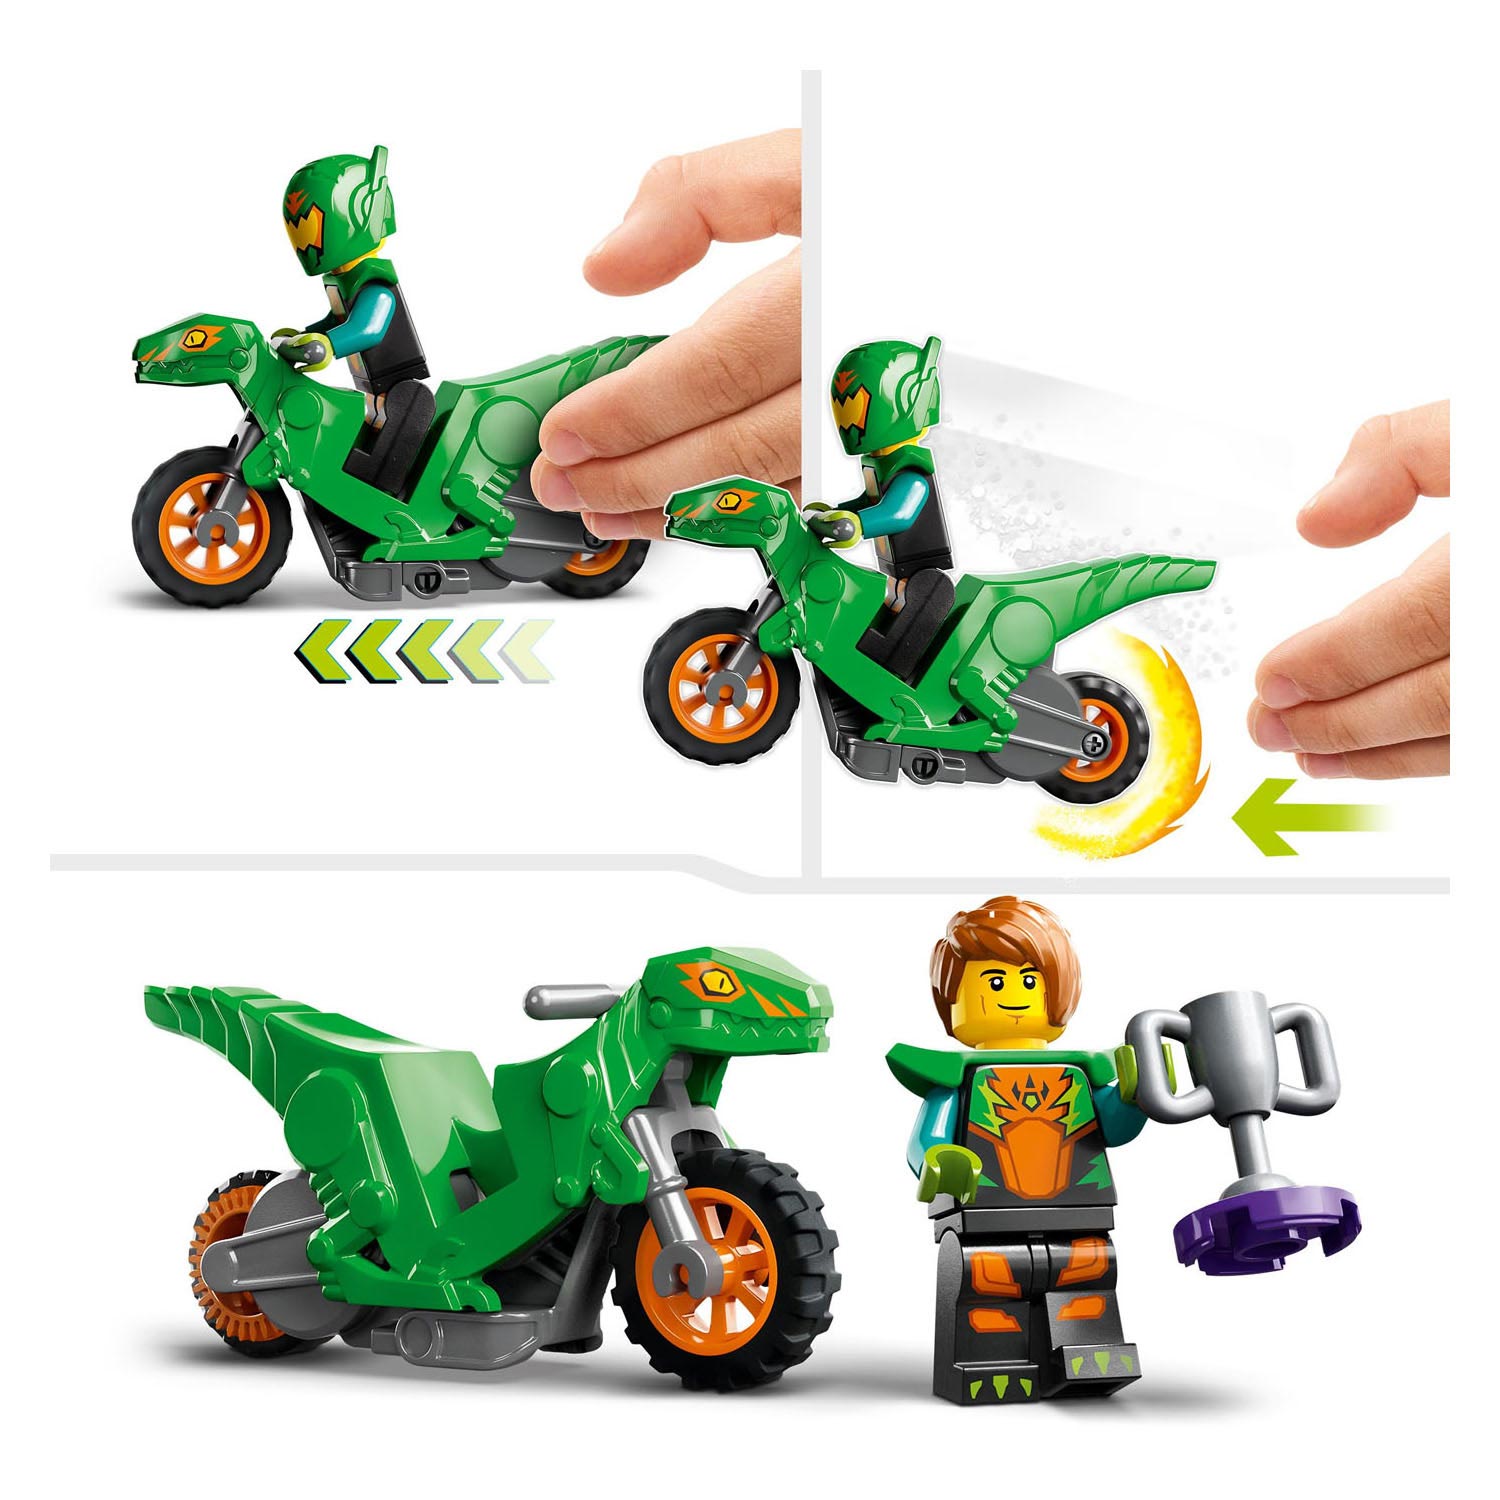 LEGO City 60359 Uitdaging: Dunken met Stuntbaan